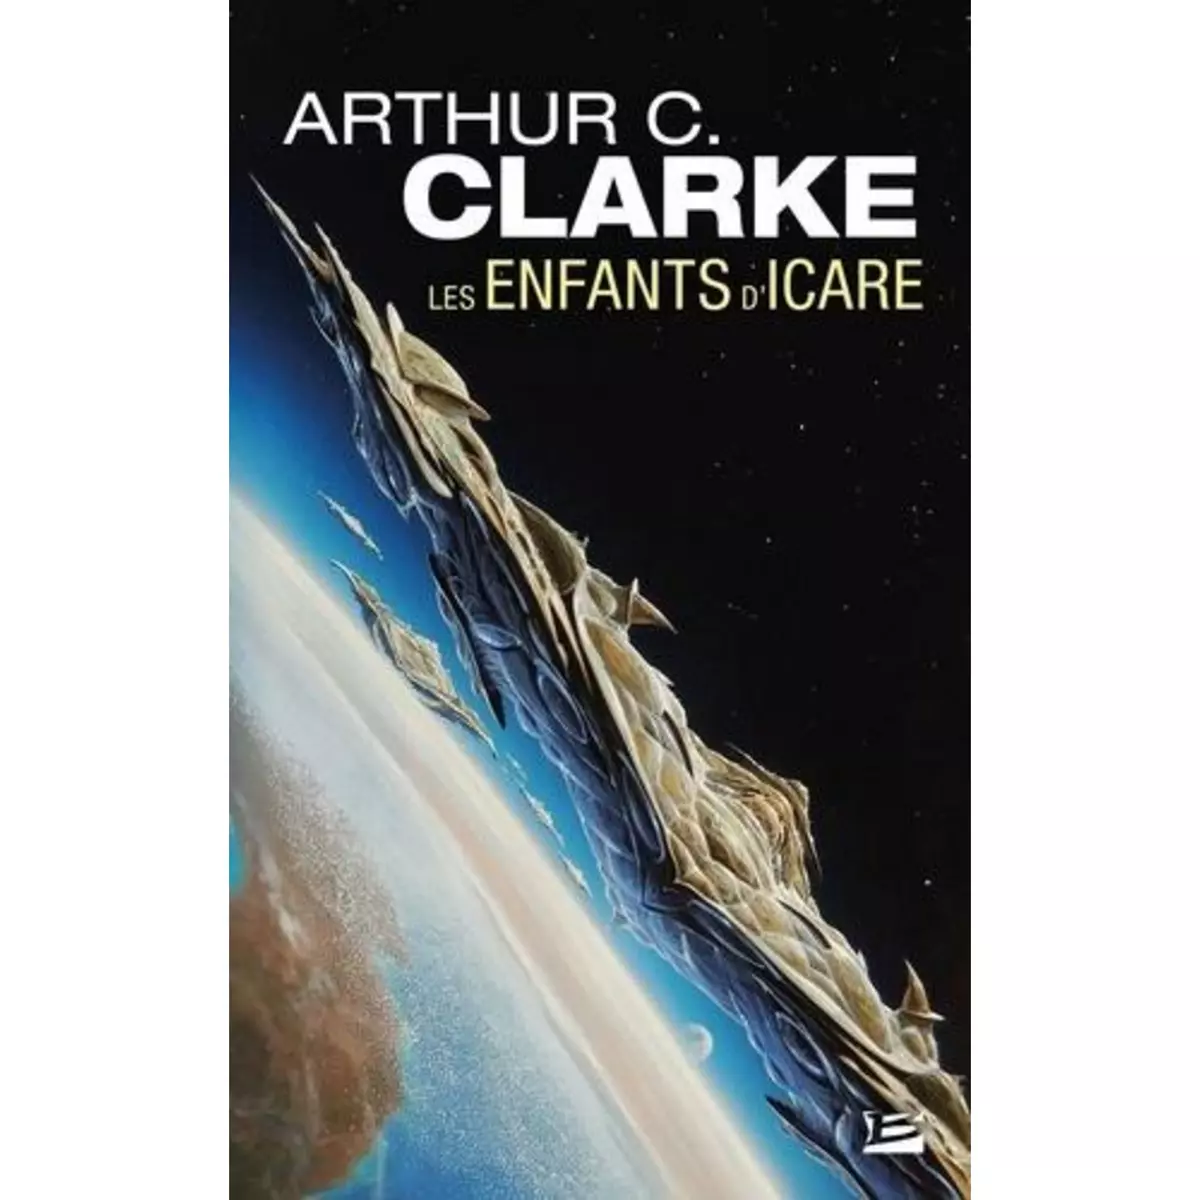  LES ENFANTS D'ICARE, Clarke Arthur C.